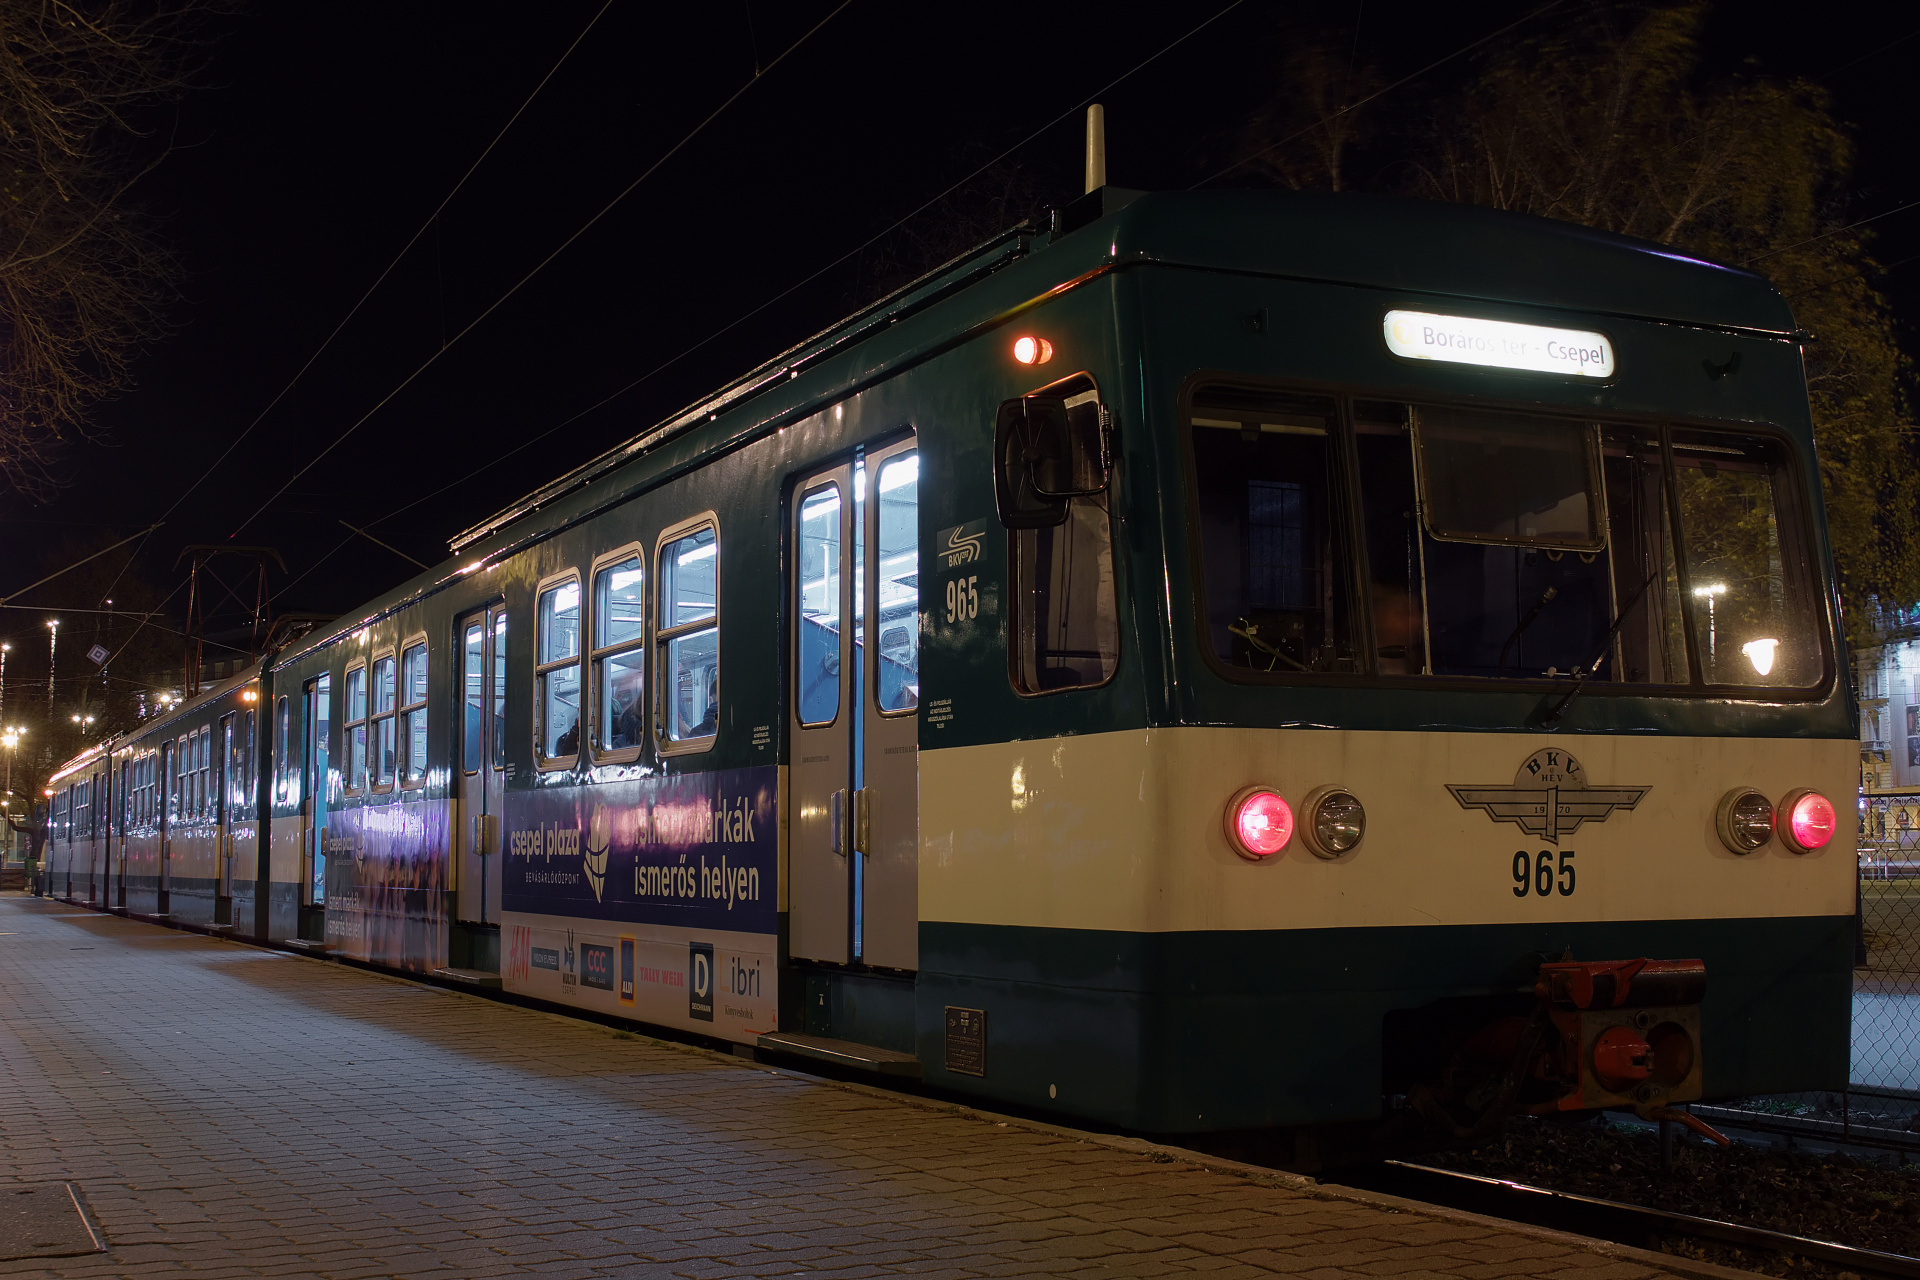 VEB LEW MXA 965 (Podróże » Budapeszt » Pojazdy » Pociągi i lokomotywy)